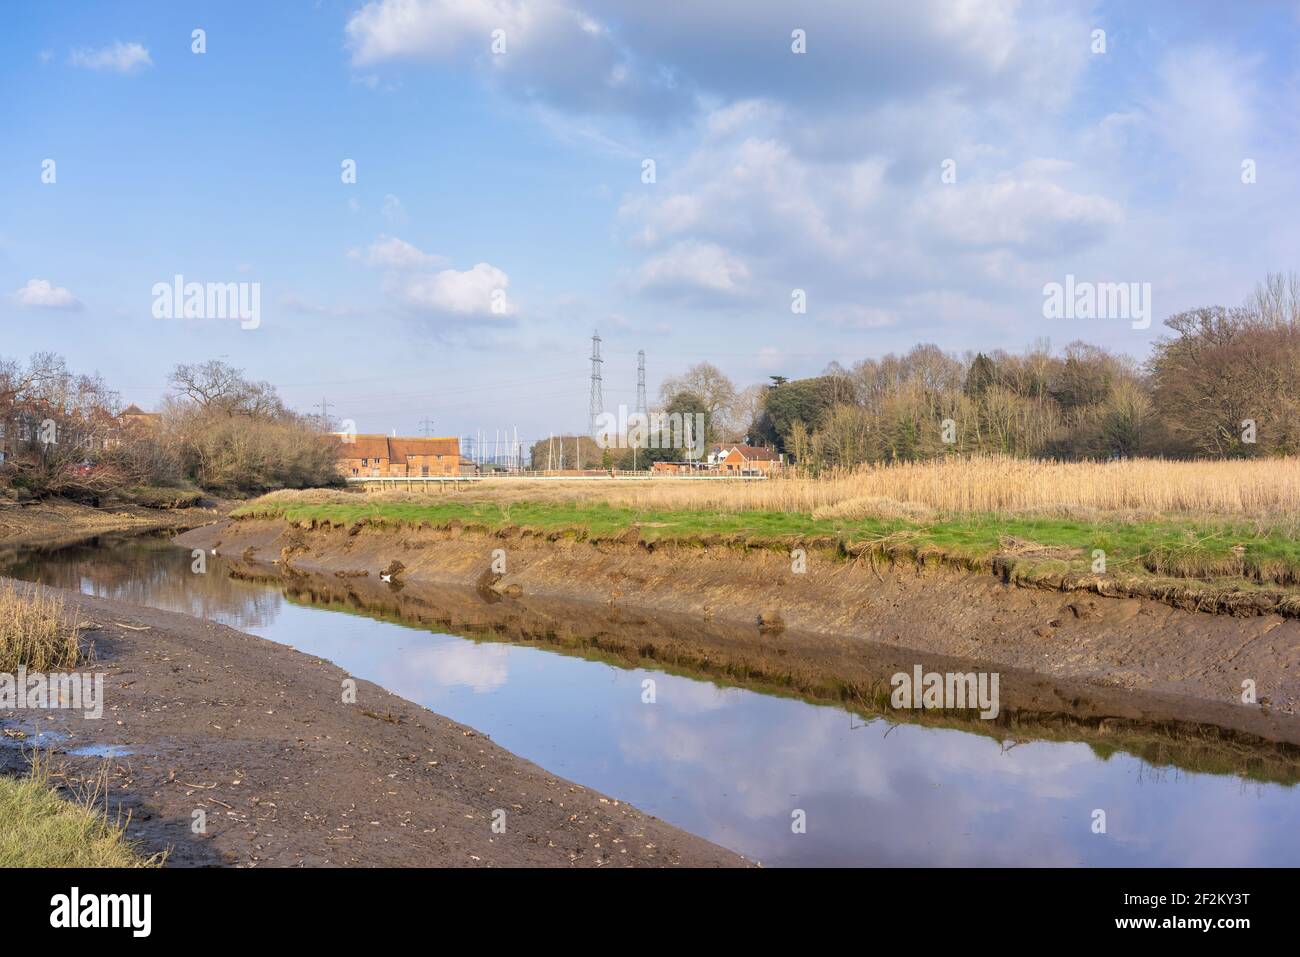 Vue sur l'estuaire de la marée de Bartley Water à Totton et Eling avec le moulin à marée d'Eling en arrière-plan, Southampton, Hampshire, Angleterre, Royaume-Uni Banque D'Images